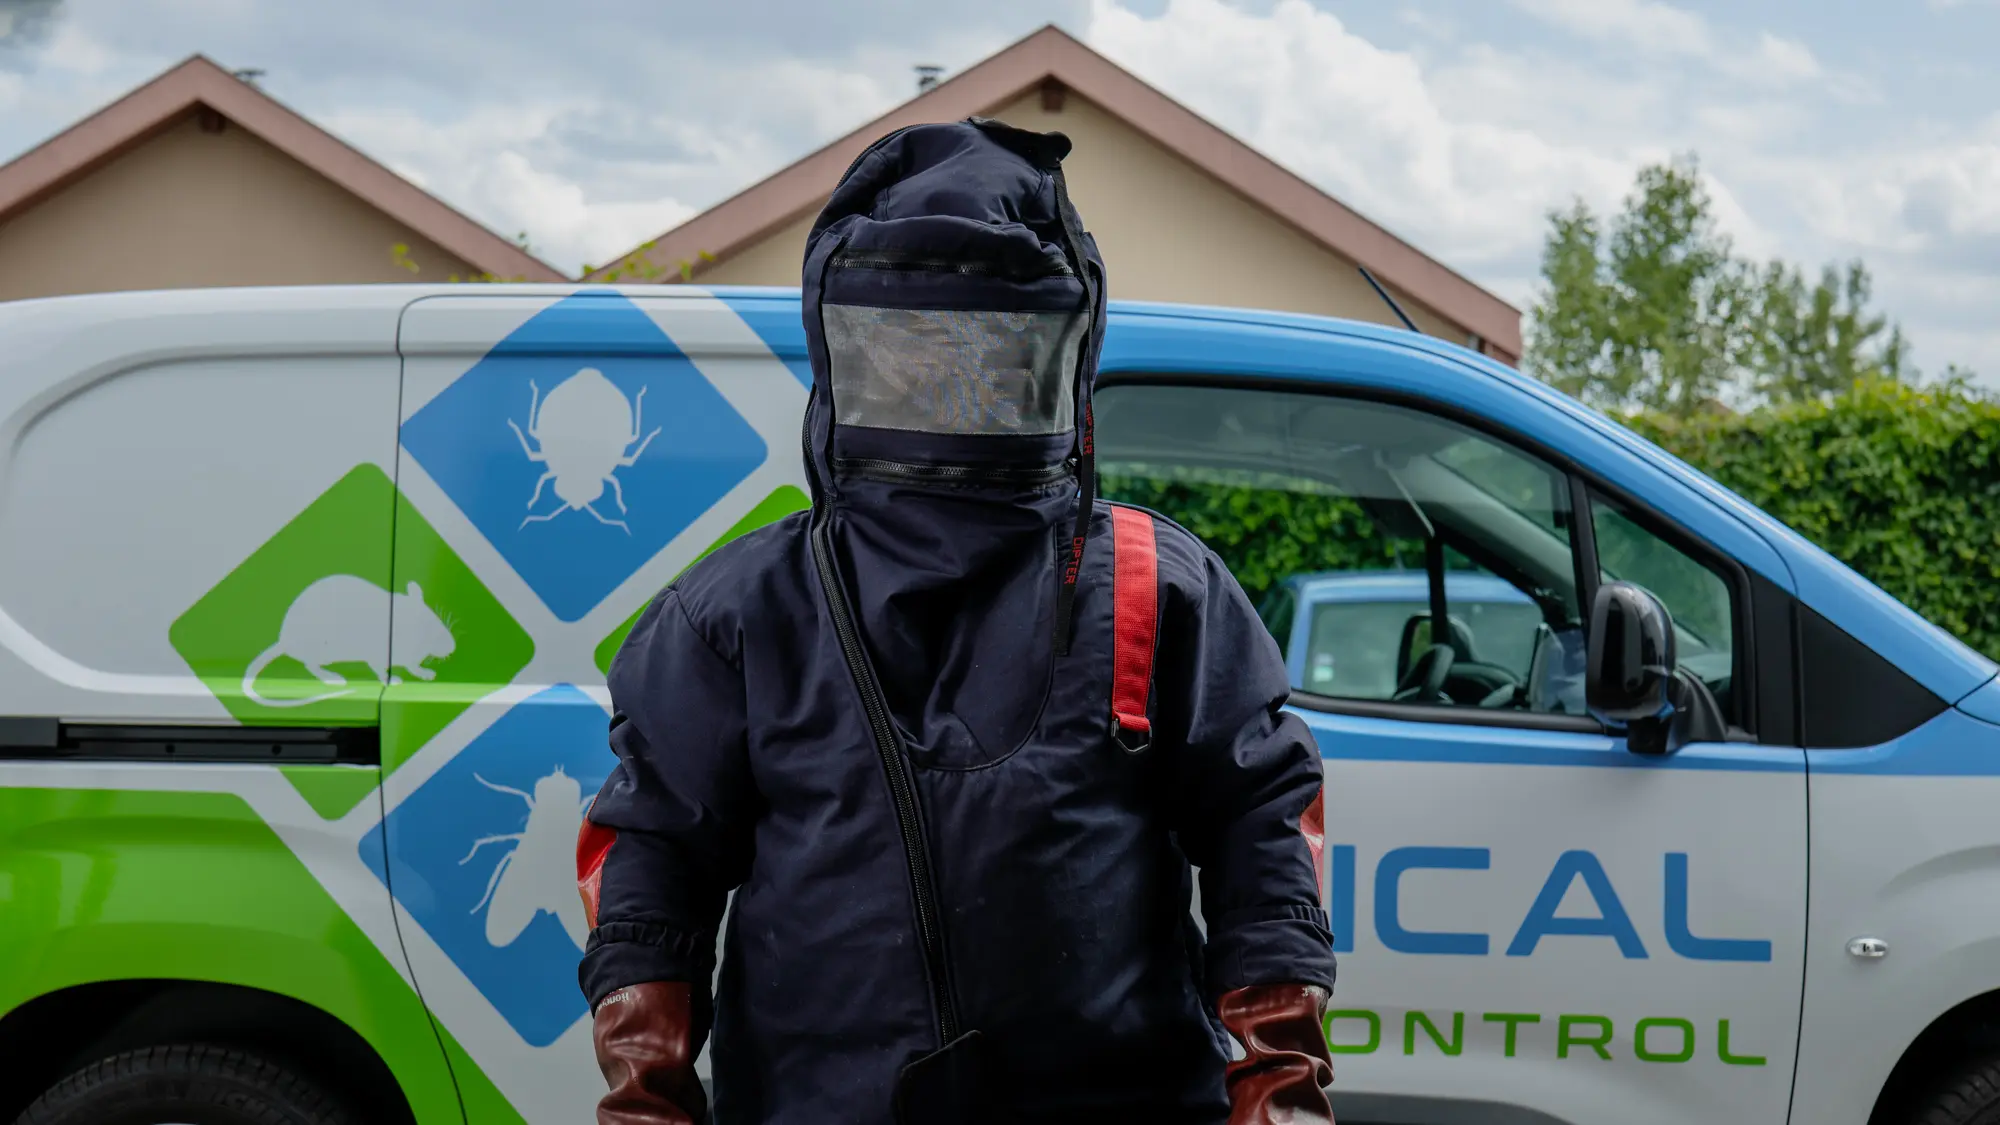 Homme avec un masque devant une camionnette - jyp-production - photographe strasbourg alsace